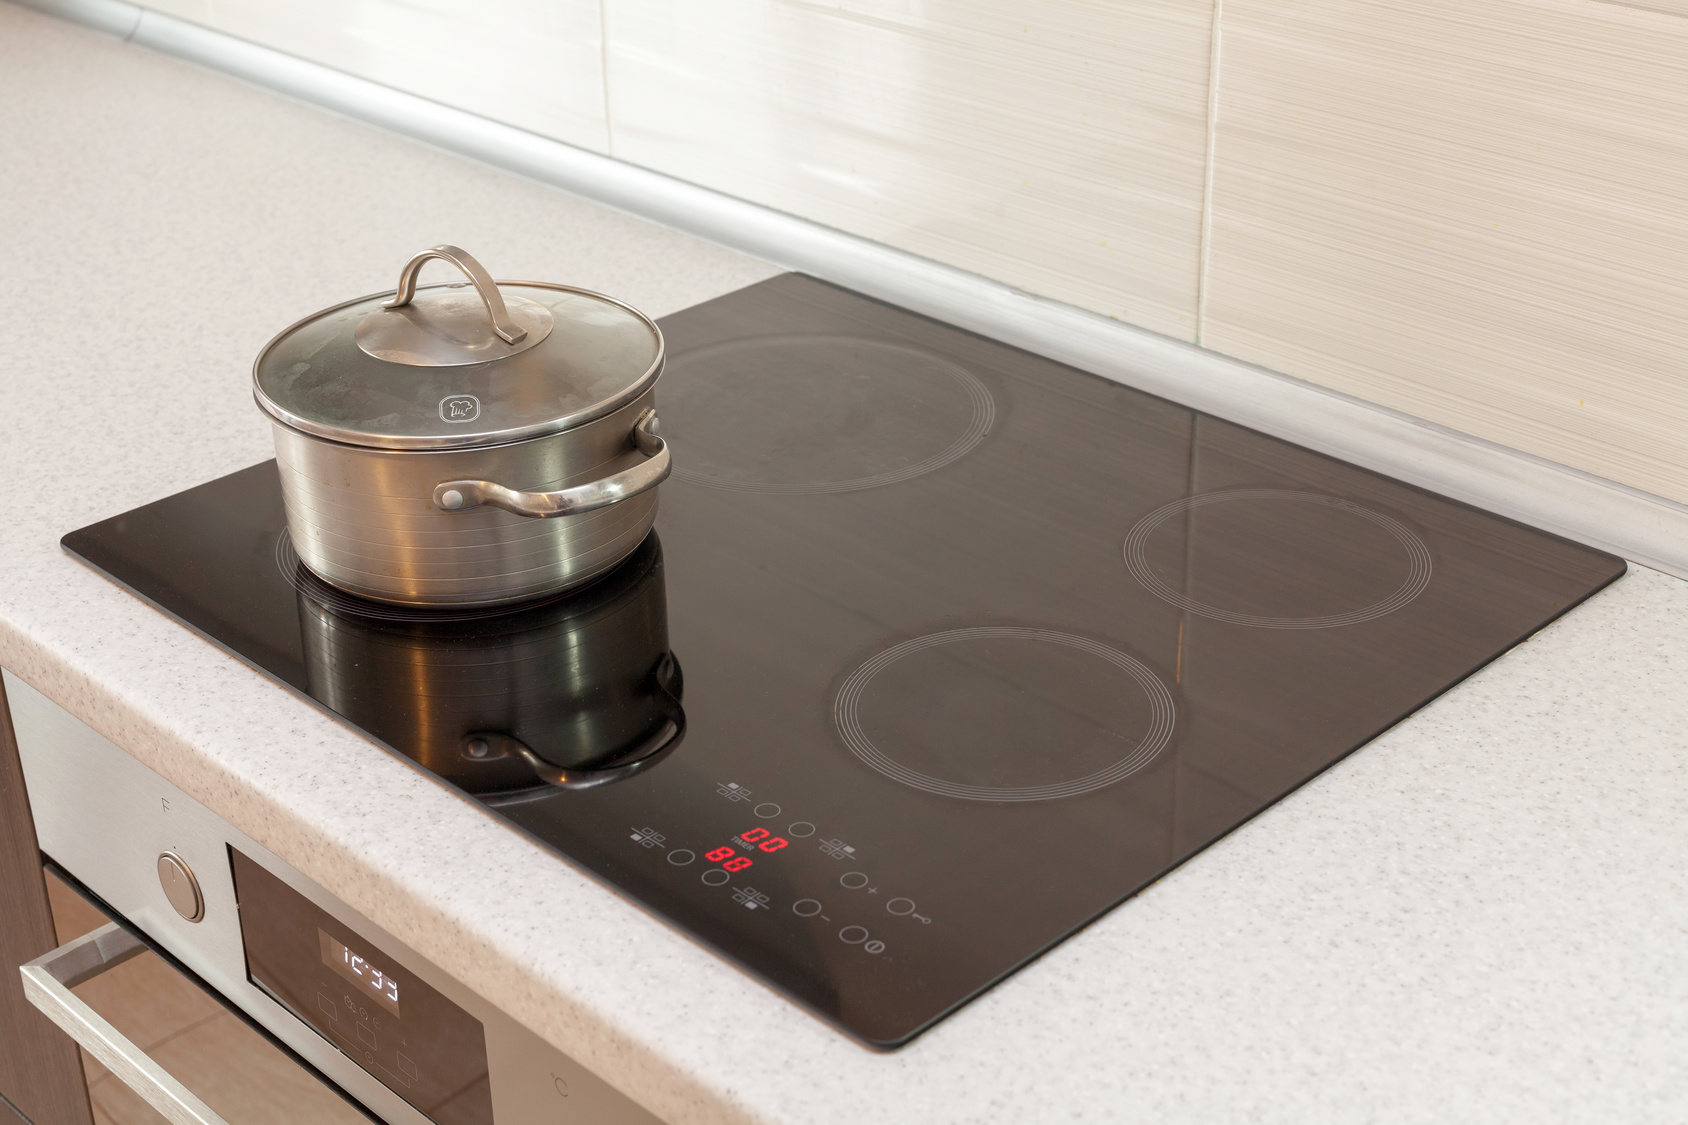 3 méthodes faciles pour nettoyer vos plaques de cuisson